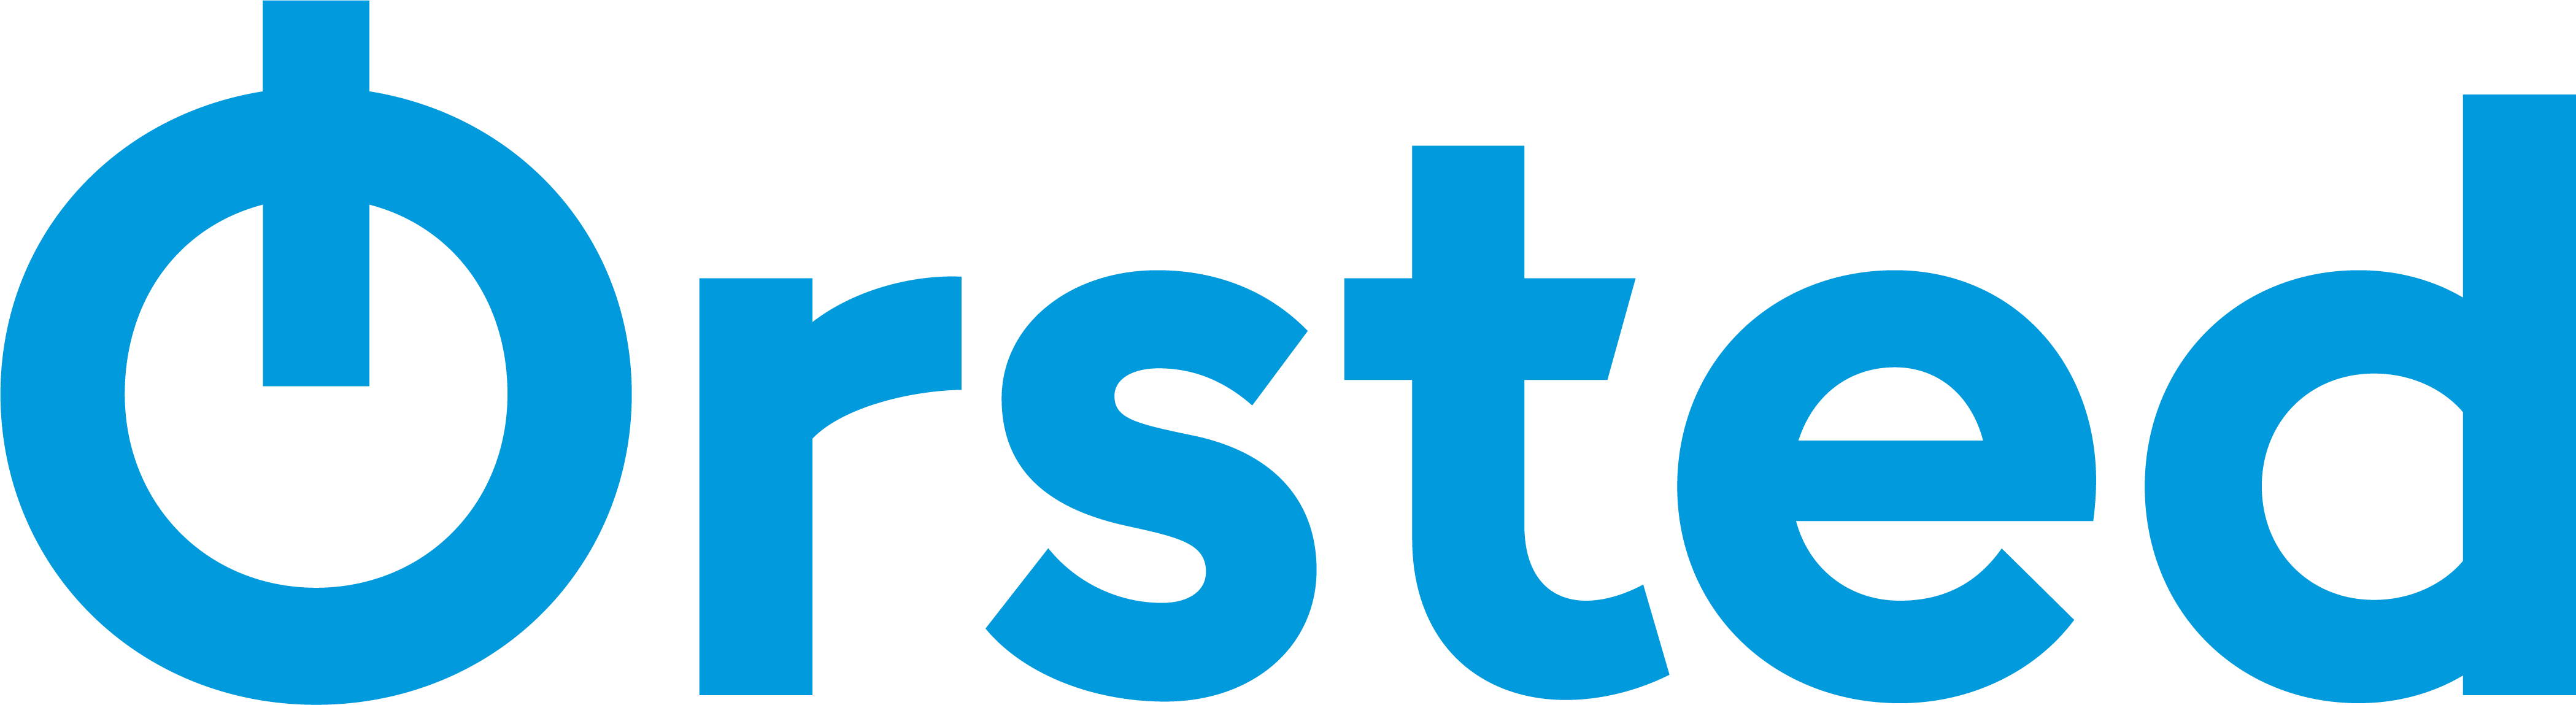 Ørsted logo